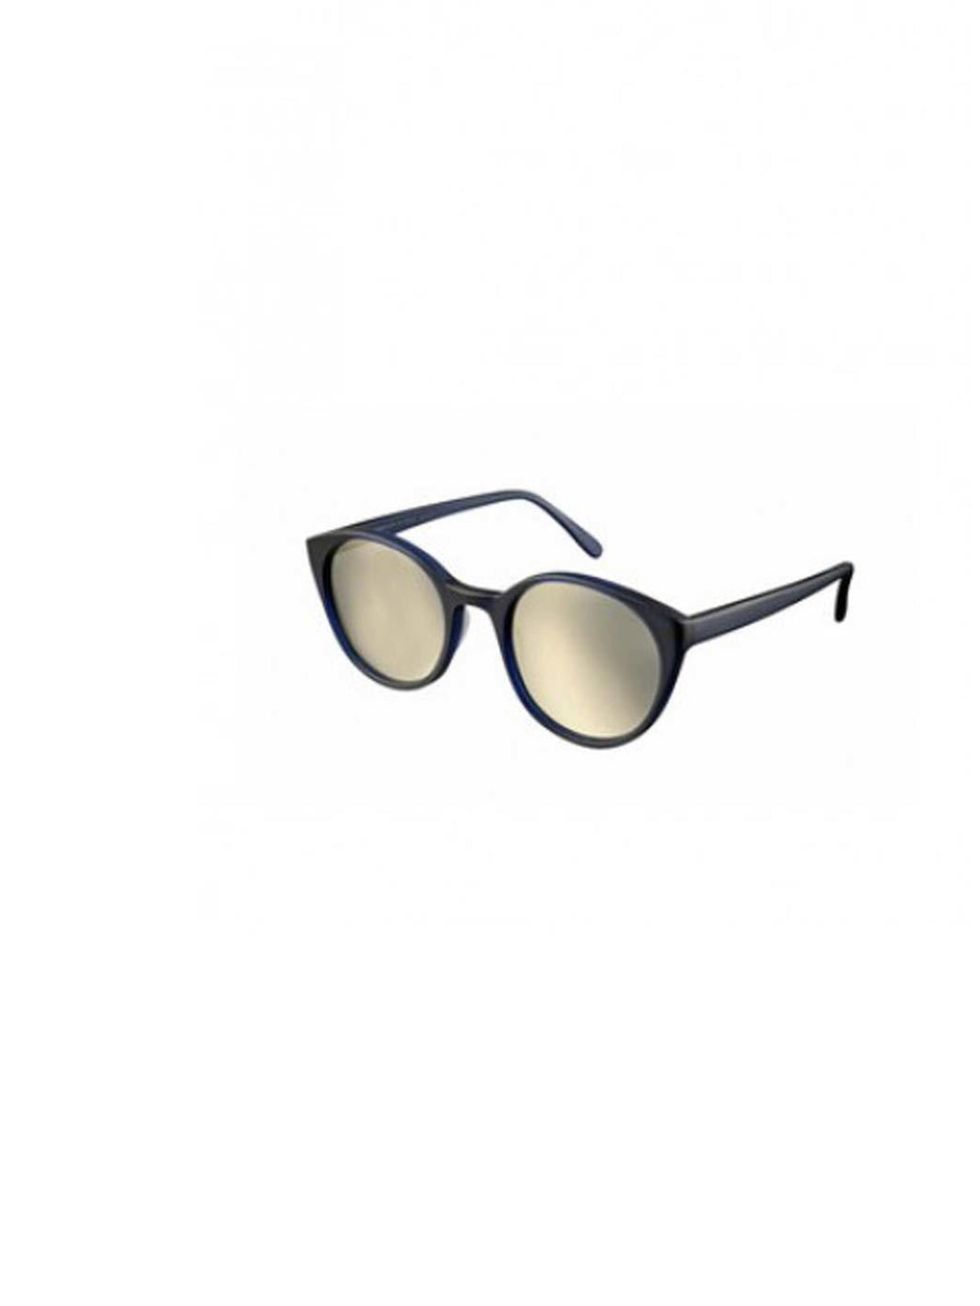 <p><a href="http://shop.prismlondon.com/collections/matte-acetate-sunglasses/products/copenhagen-matte-acetate-midnight-blue-sunglasses-with-silver-flash-lenses">Prism</a> sunglasses, £245</p>